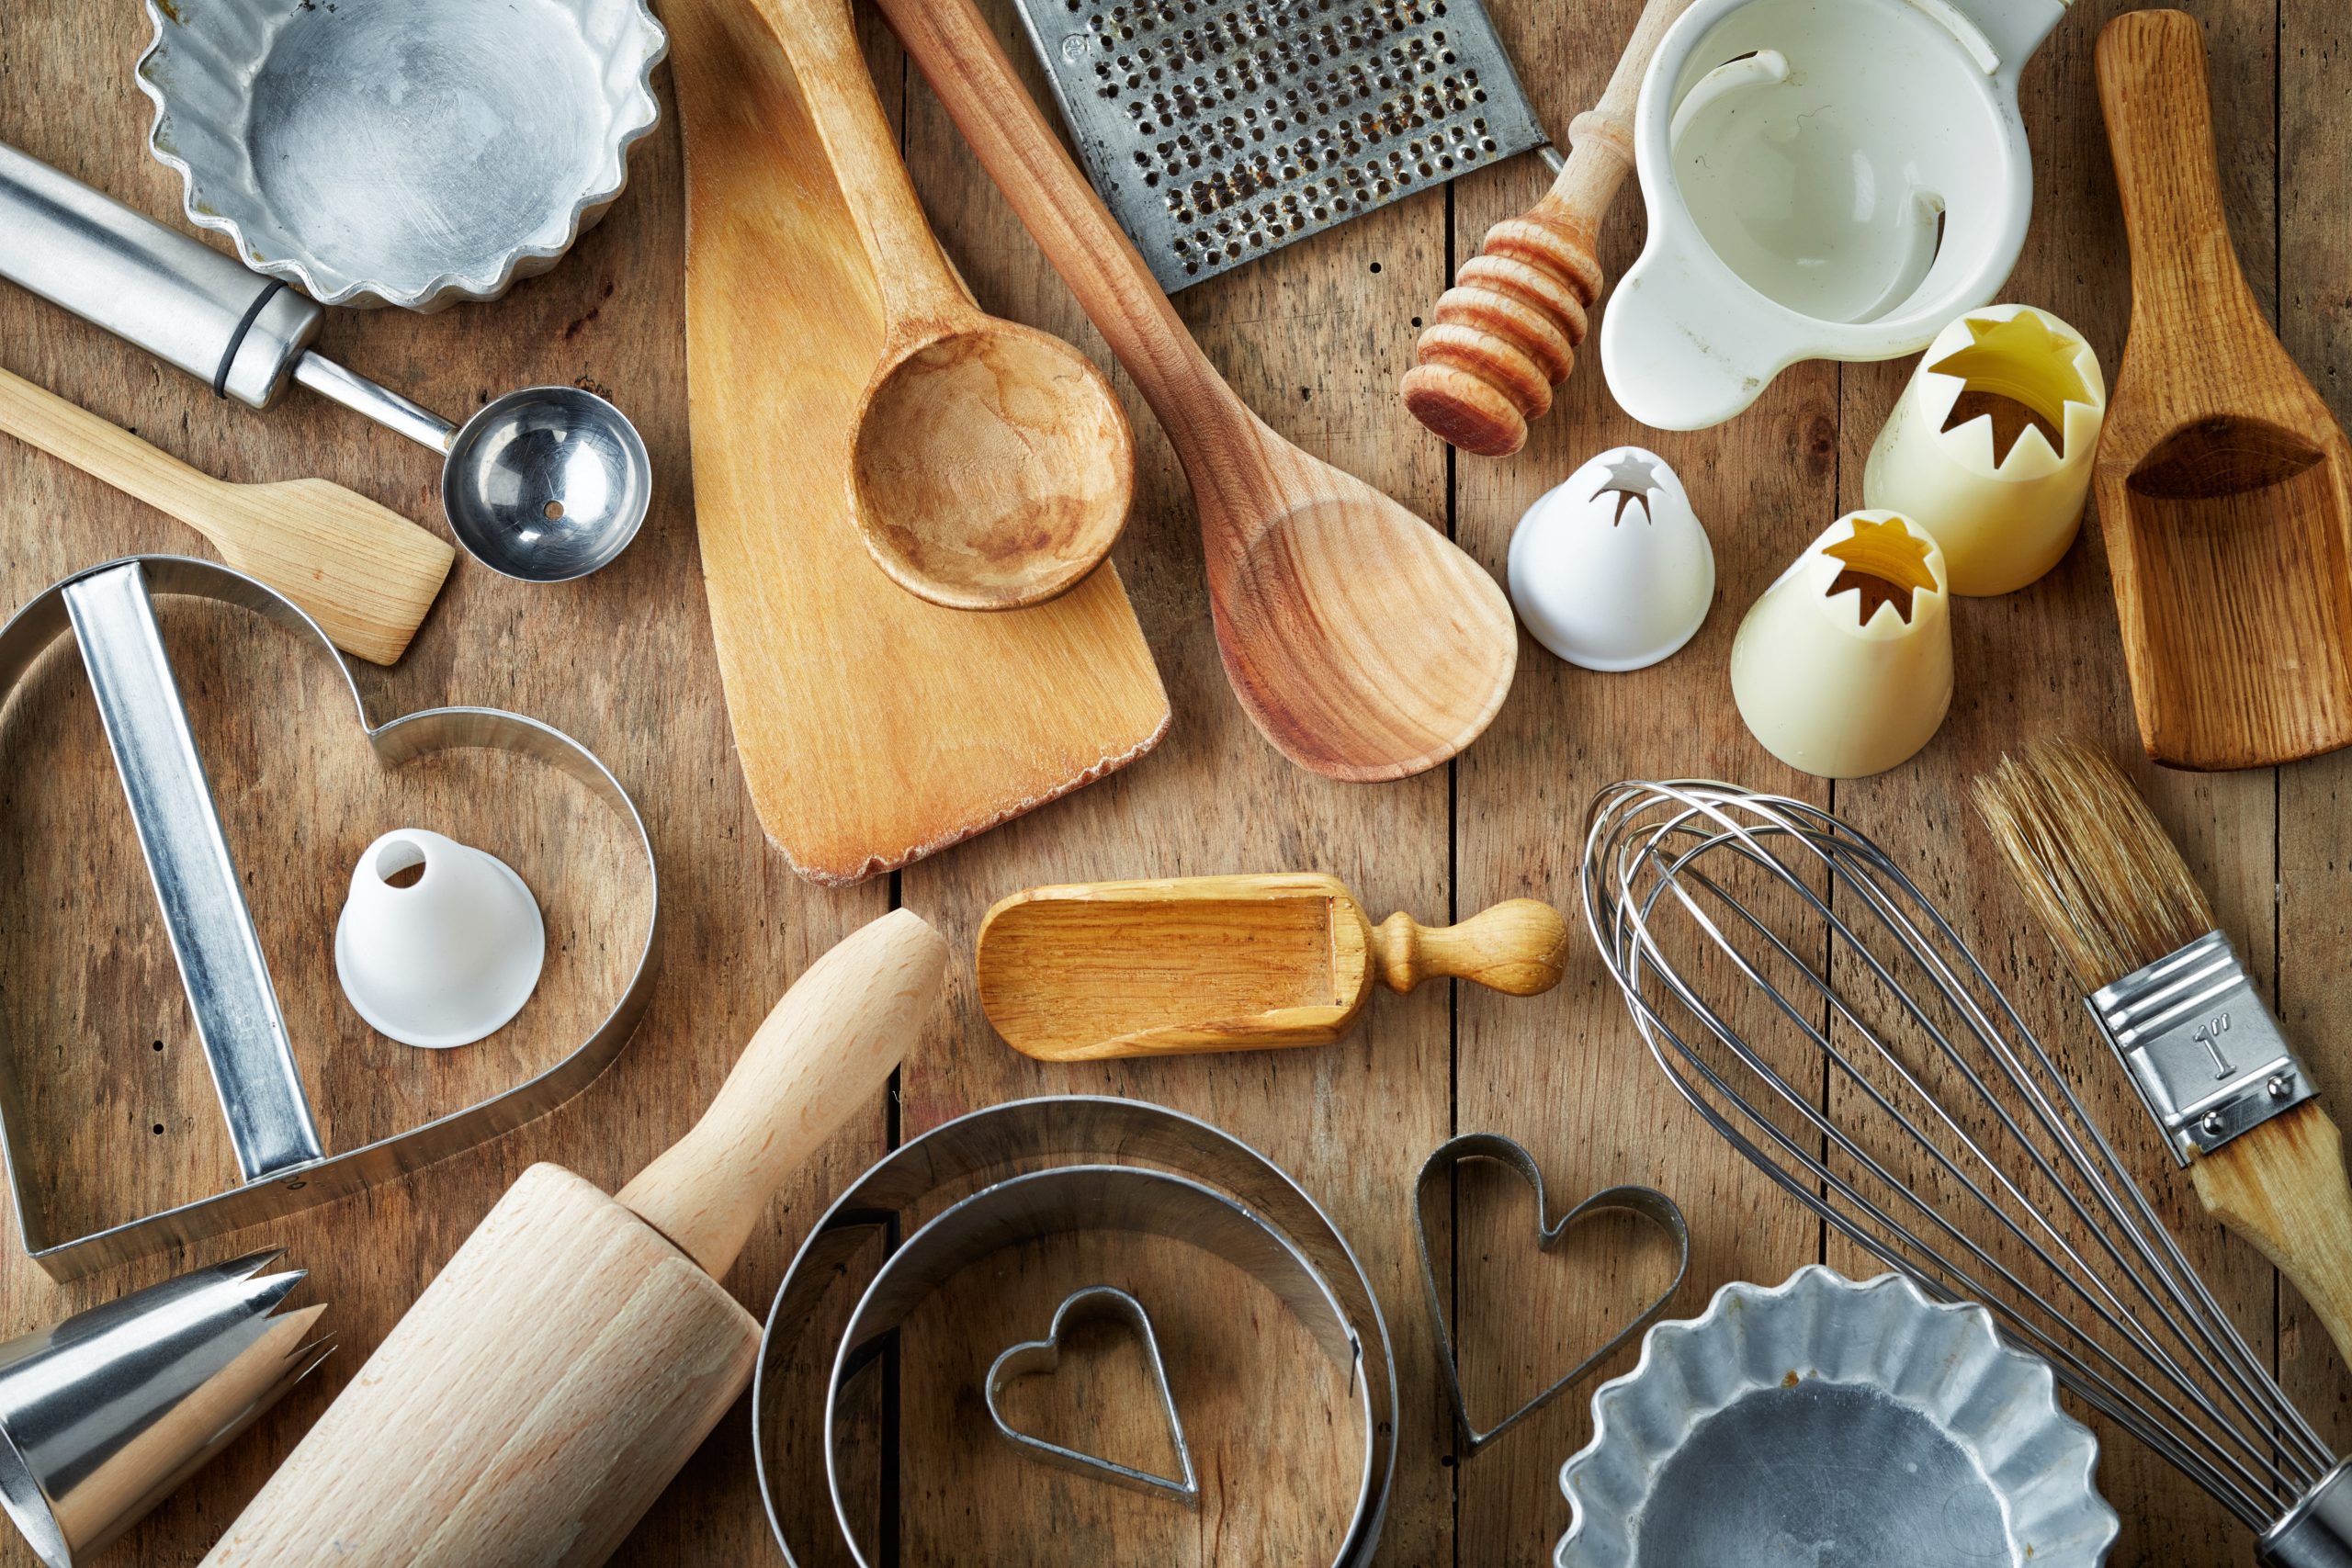 Les 5 outils de cuisine indispensables 